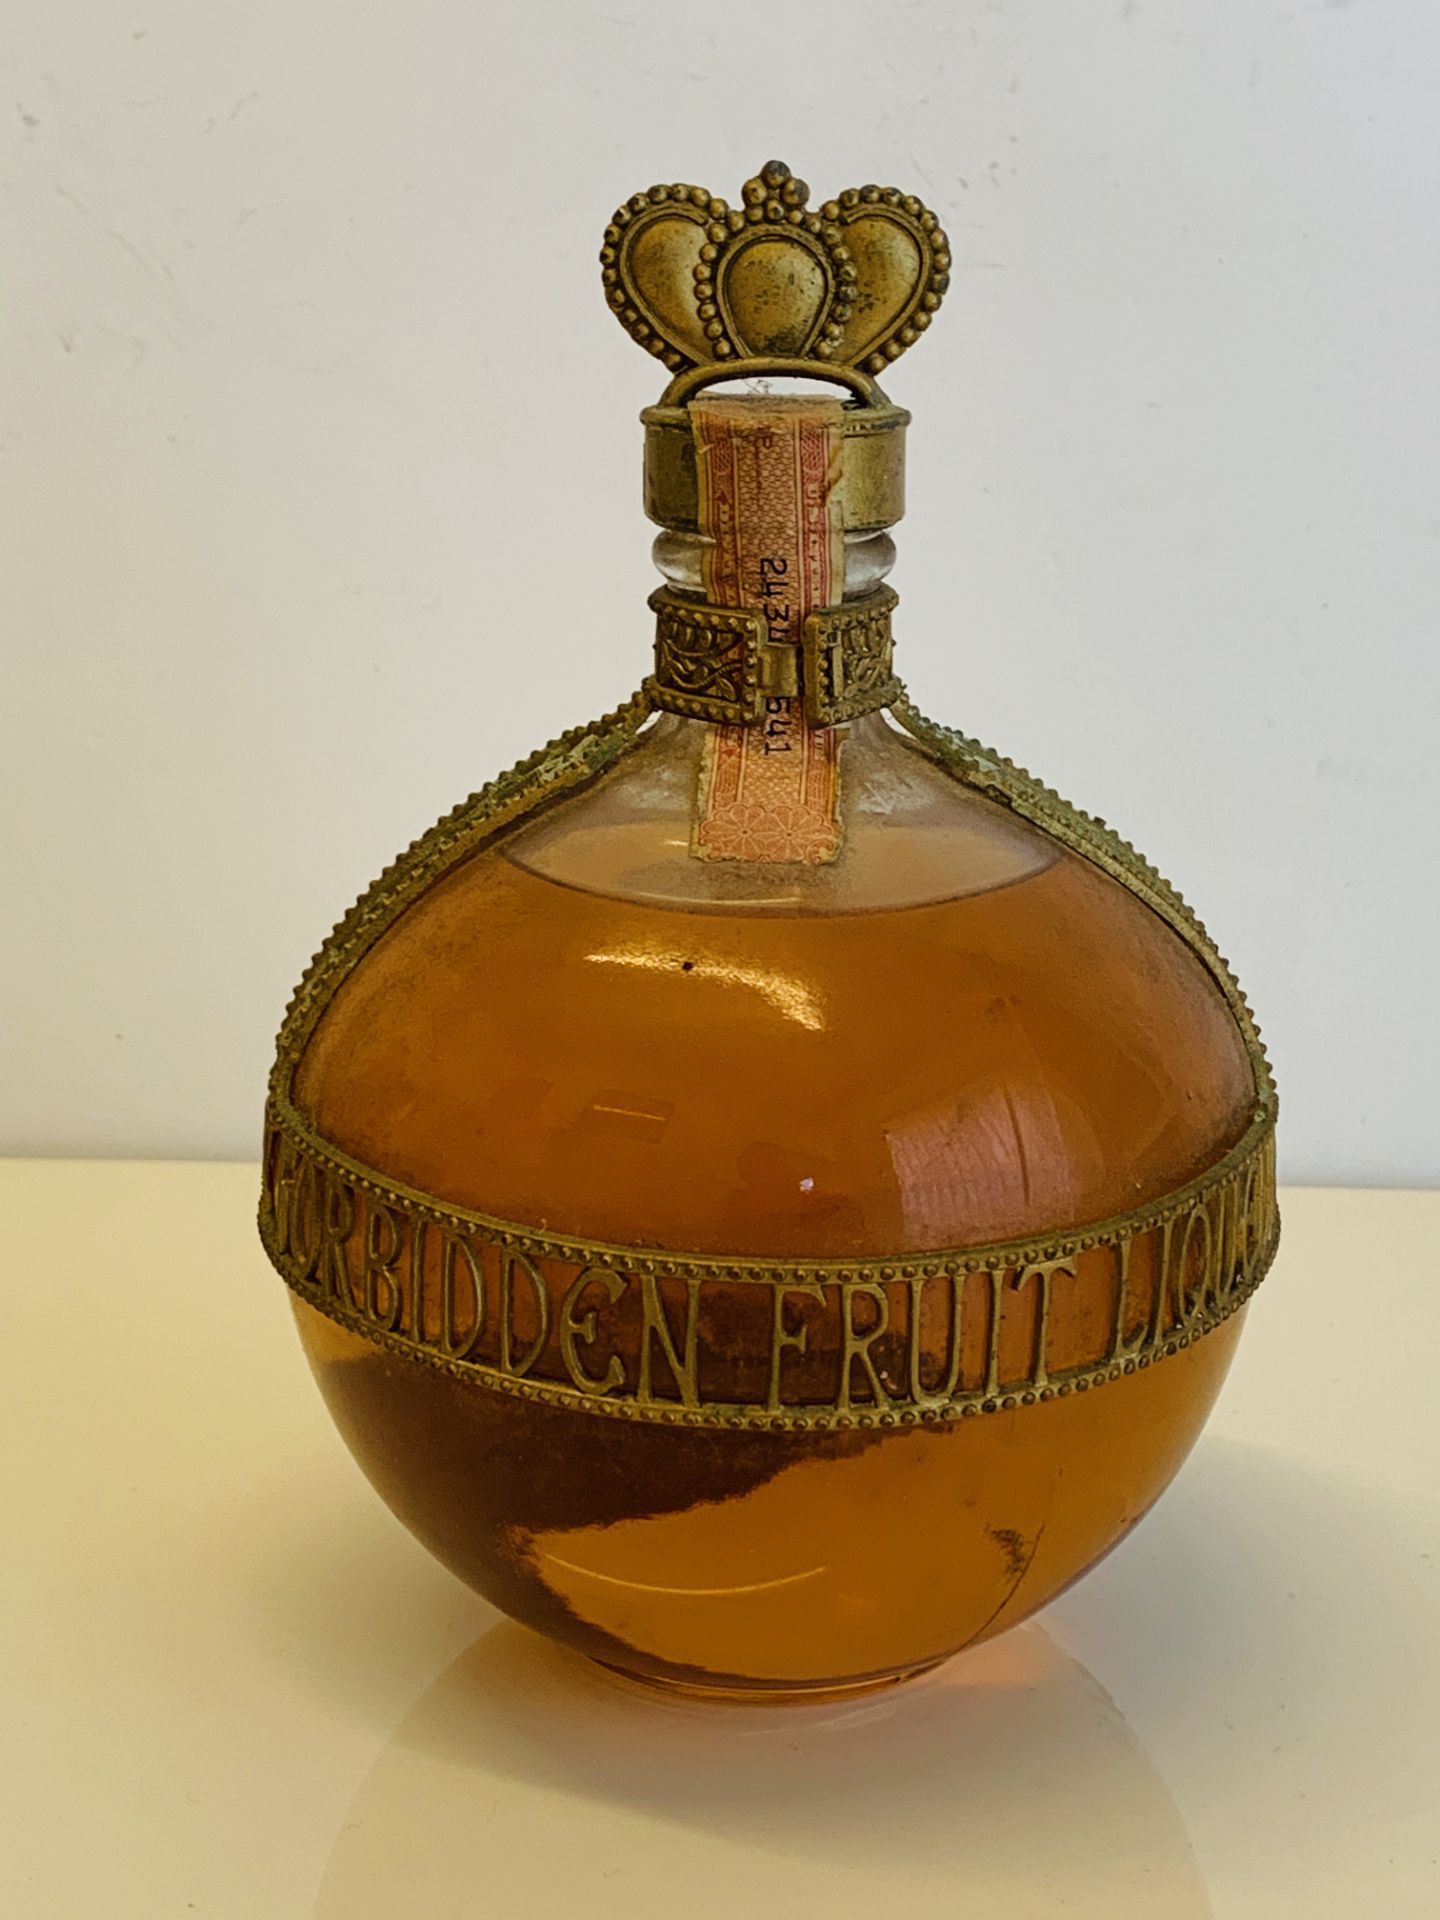 Bottle of Jacquins Forbidden Fruit Liqueur, bottle marked 4/5 Quart (78.67cls) believed bottled in